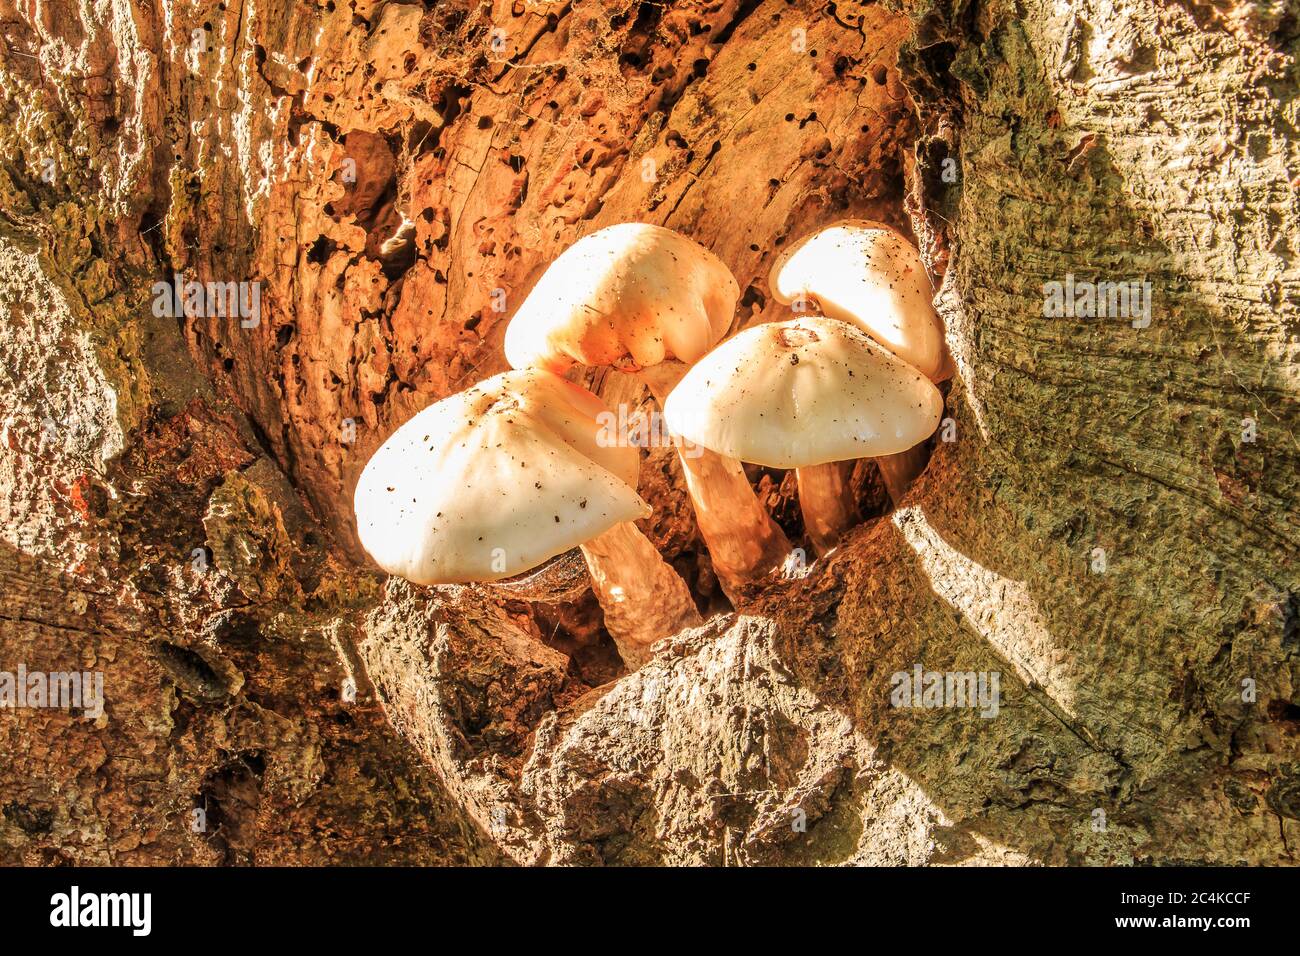 Mehrere Austernpilze wachsen aus einem Loch auf einem Laubbaumstamm. Pilze mit weißer Pilzkappe auf dem braunen Baumstamm im Laub Stockfoto